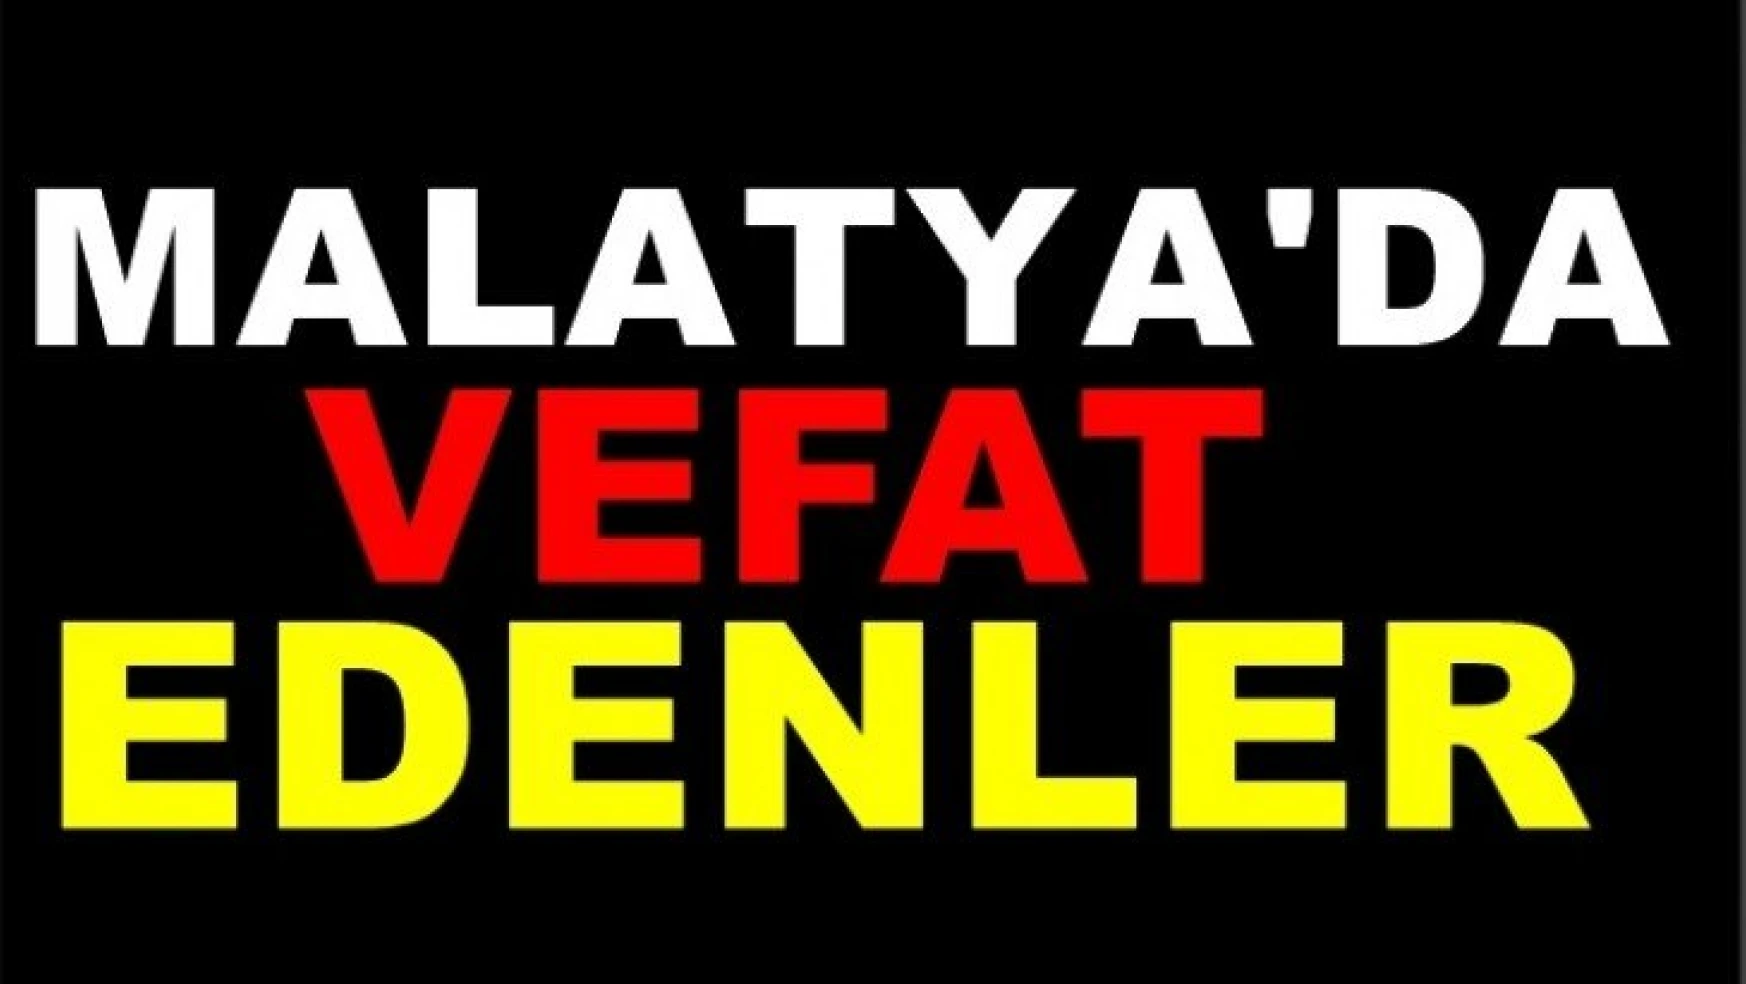 Malatya'da 12 kişi vefat etti